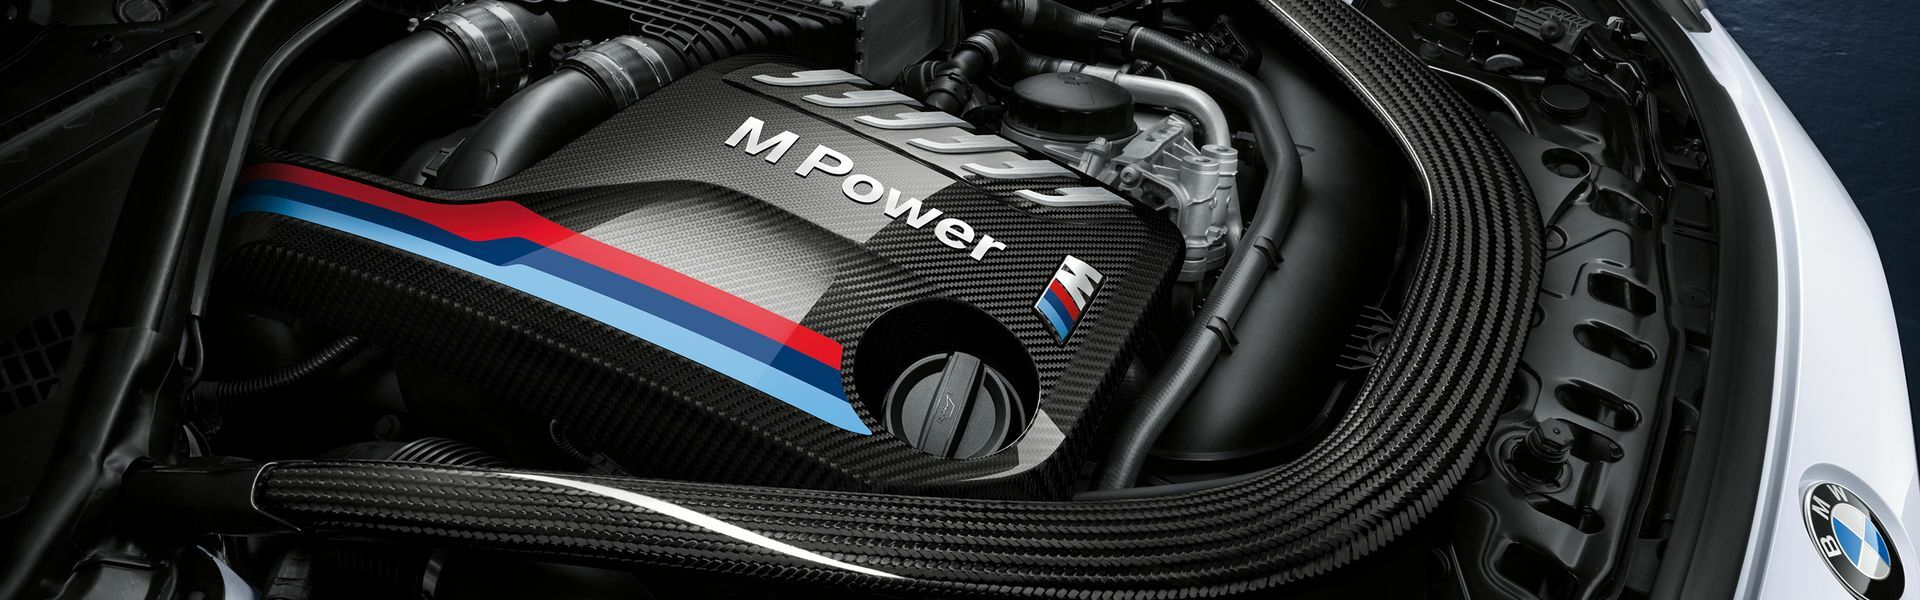 Zvýšení výkonu/ Softwarové úpravy/ Drobné performance díly pro automobil Porsche 911 GT3/RS 997 FL 3.8